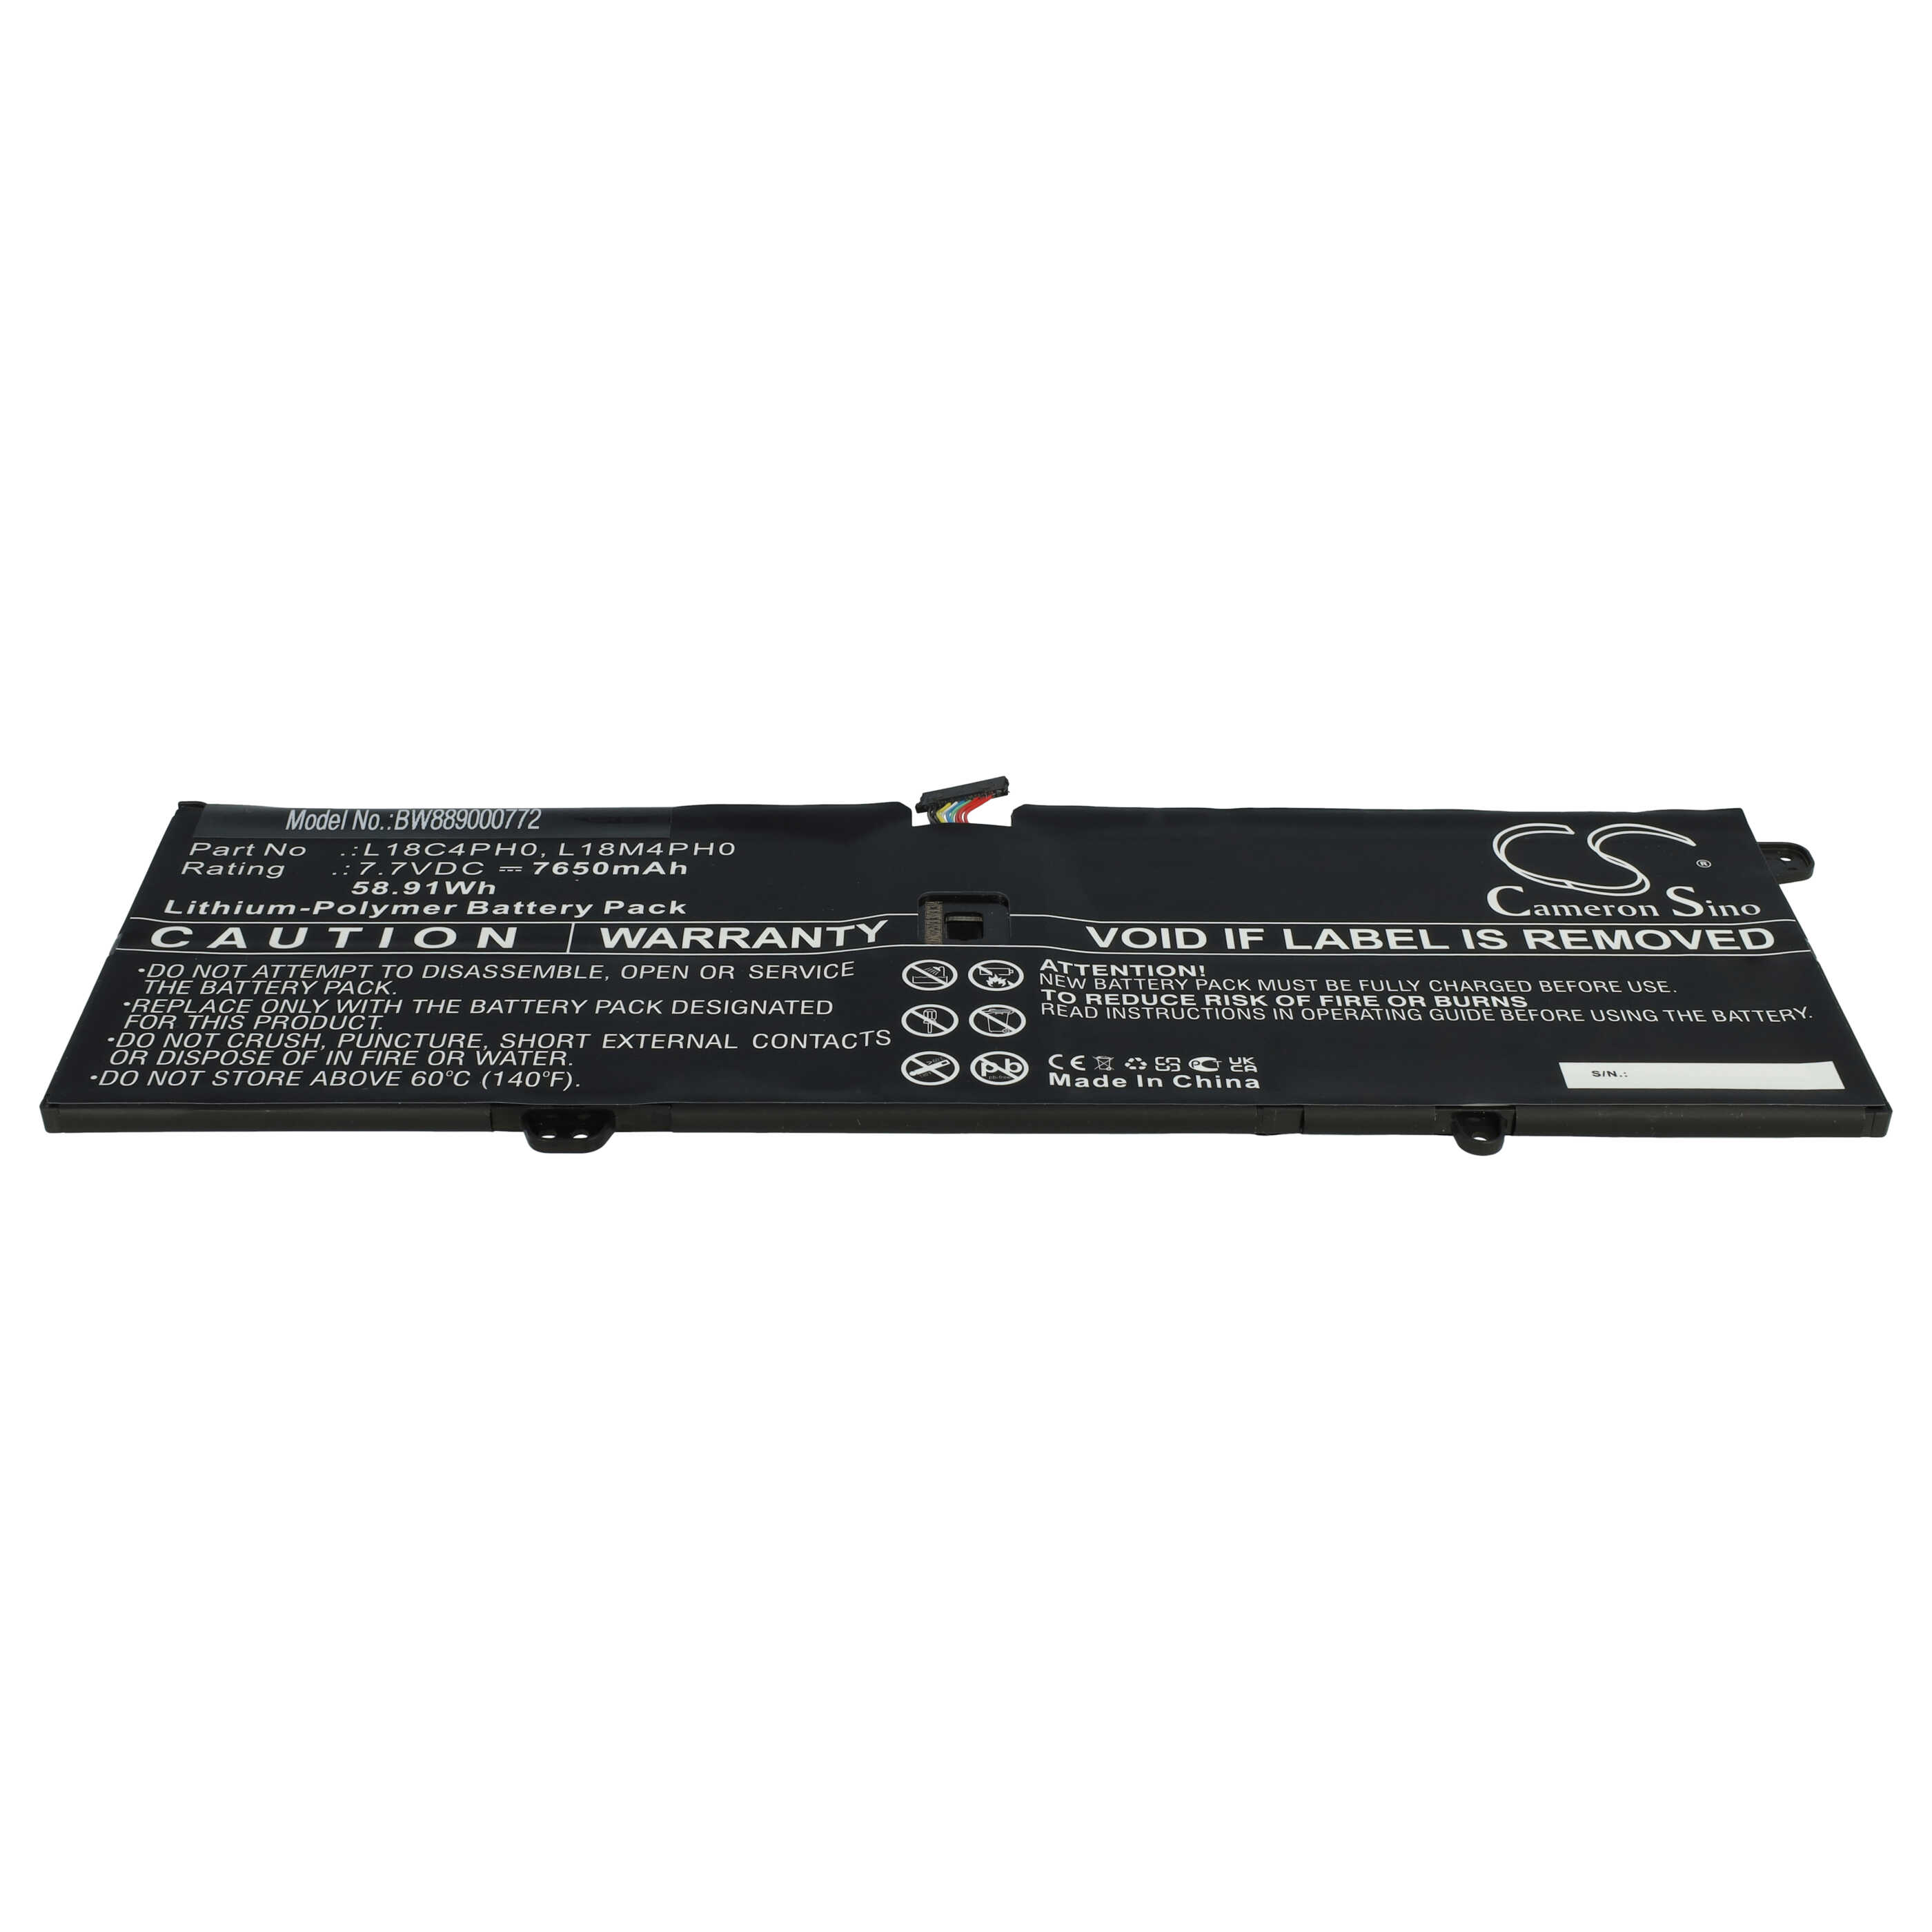 Batería reemplaza Lenovo 5B10T11585, 5B10T11586, 5B10T11686 para notebook Lenovo - 7650 mAh 7,7 V Li-poli